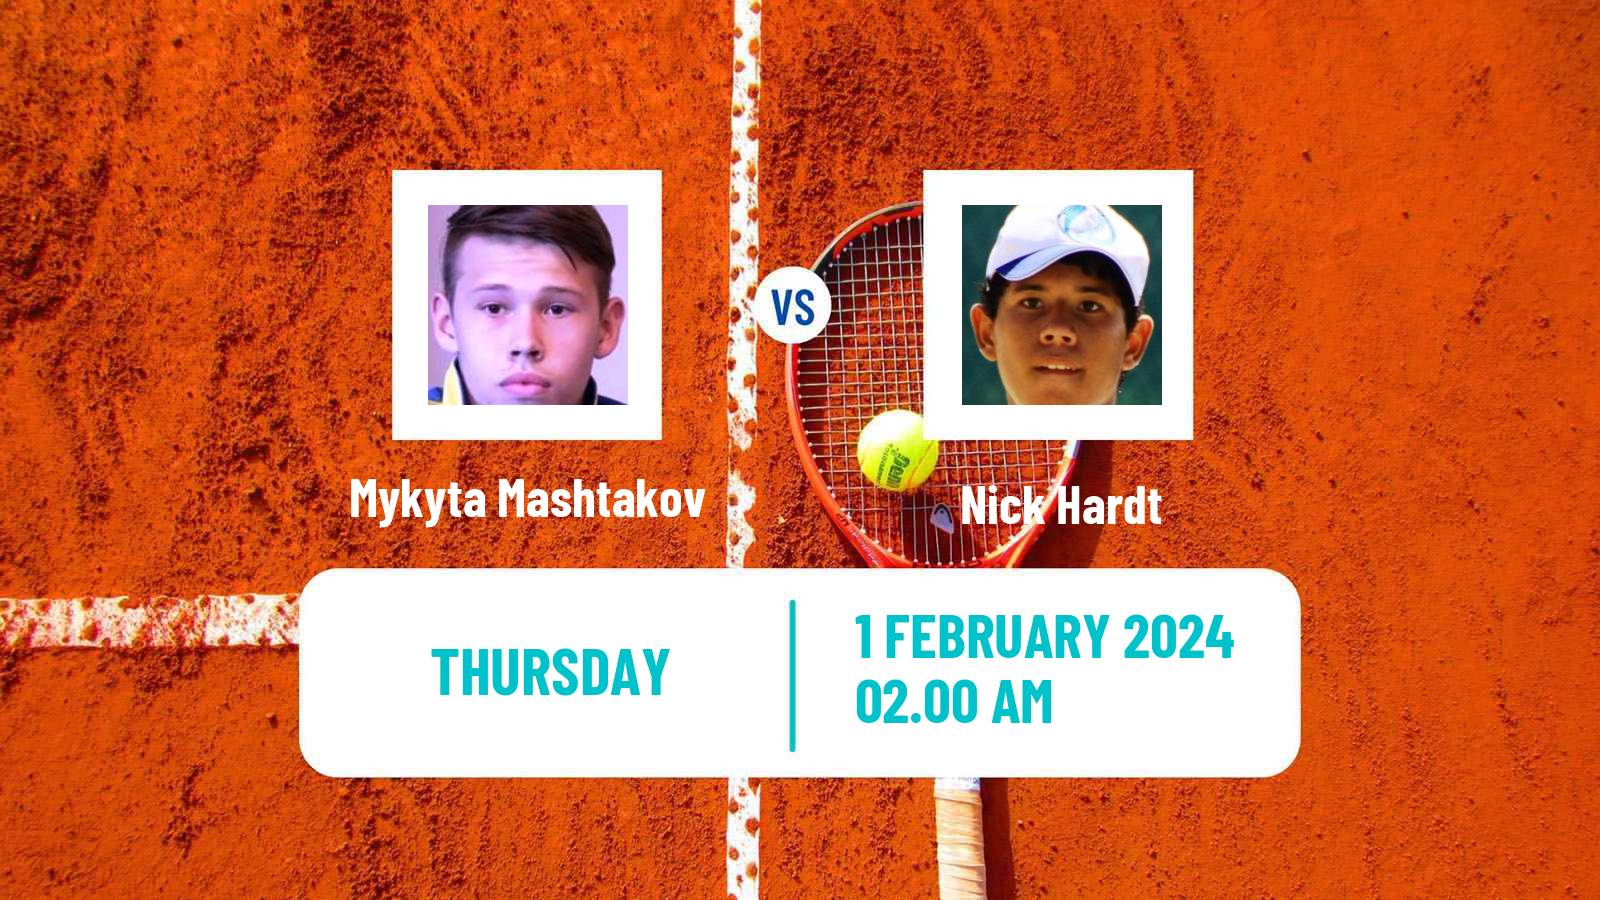 Tennis ITF M25 Antalya Men Mykyta Mashtakov - Nick Hardt